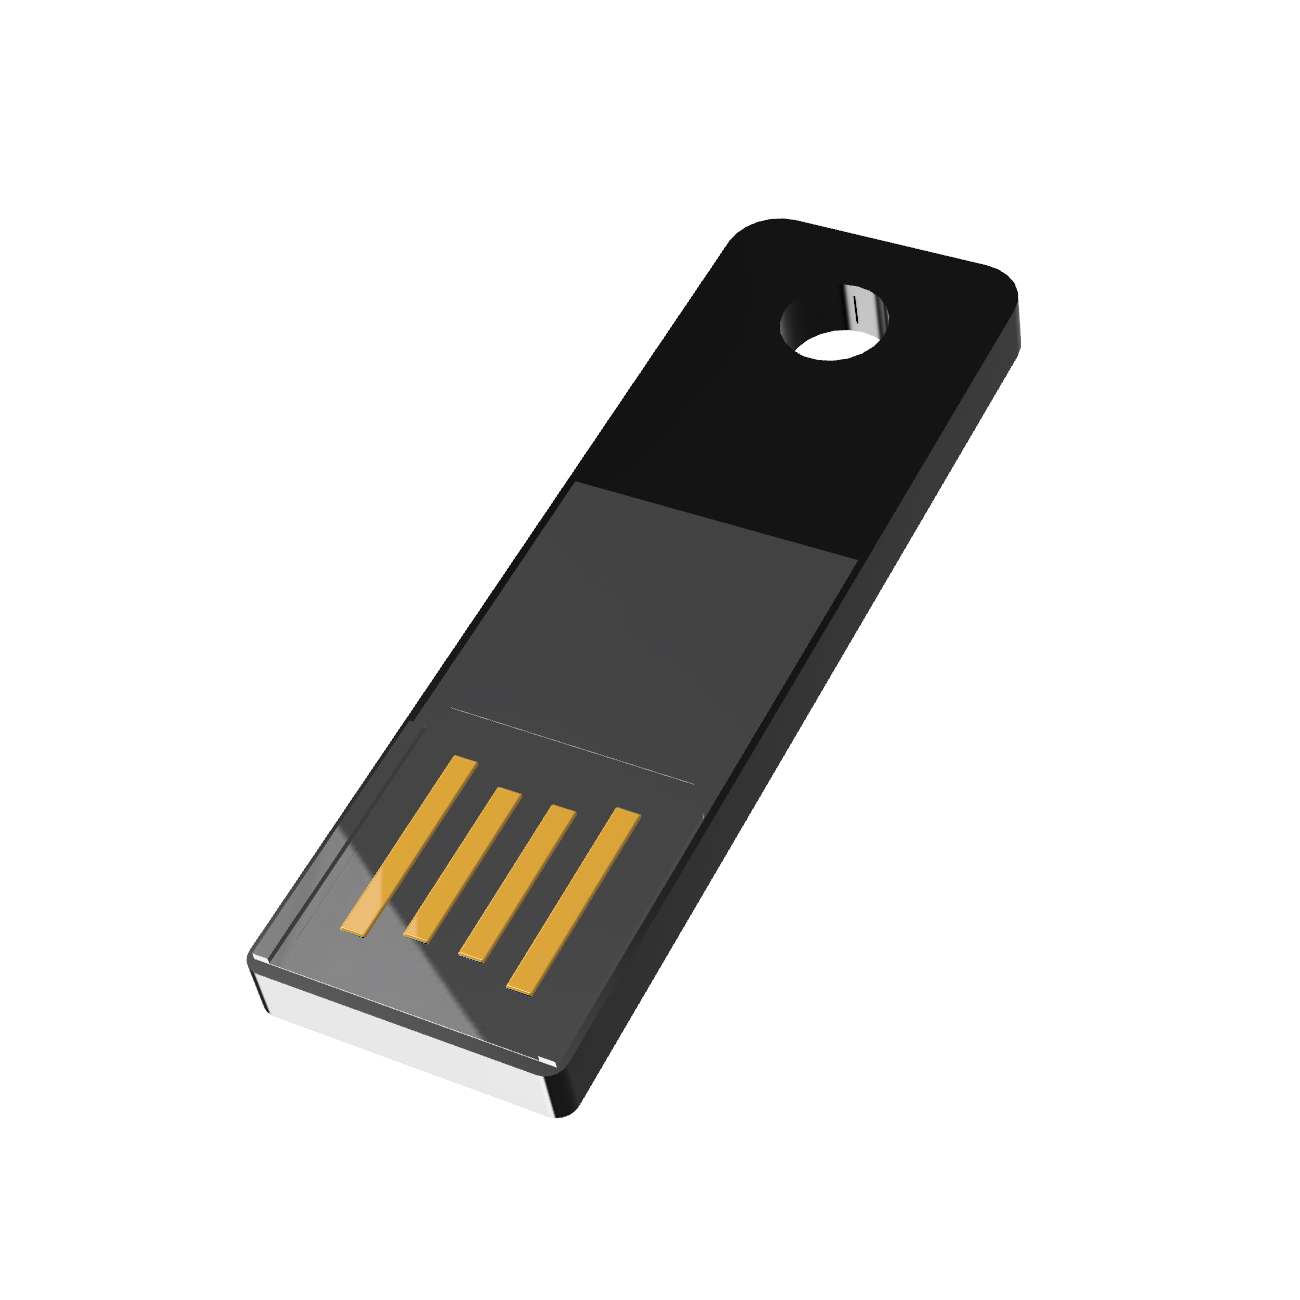 USB GERMANY ® (Schwarz, Slim USB-Stick 32 GB) Mini